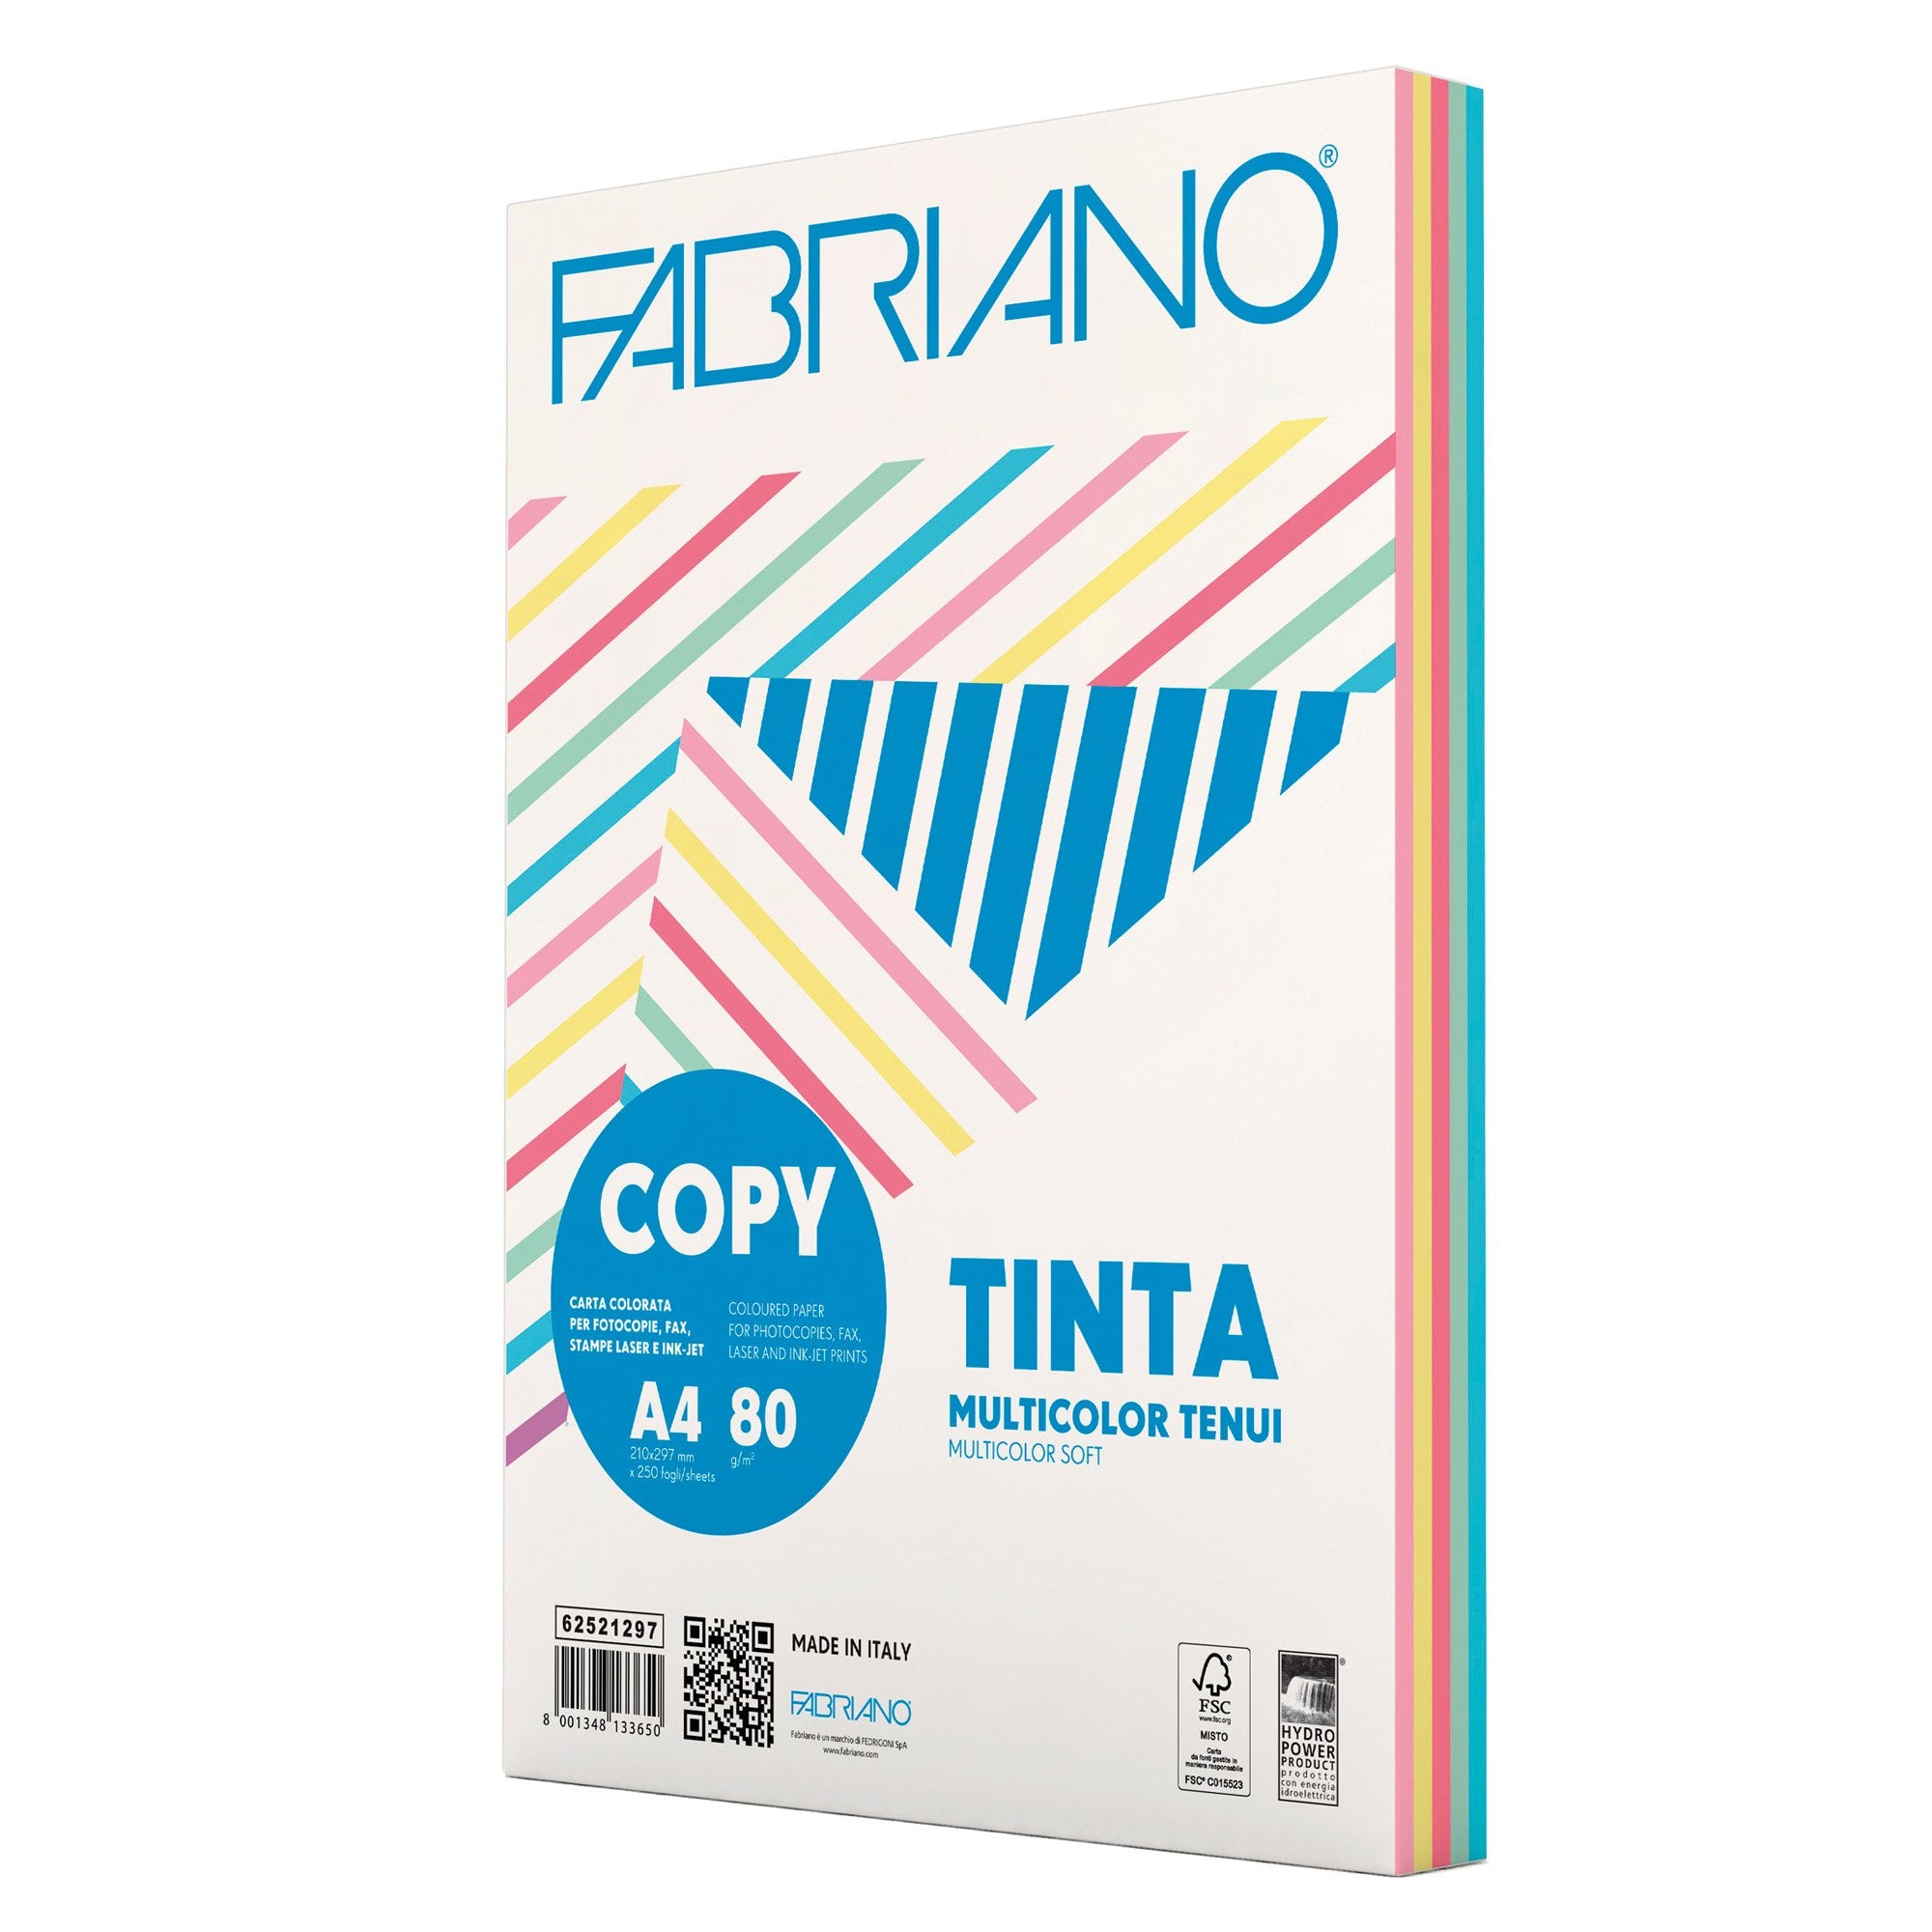 fabriano-carta-copy-tinta-multicolor-a4-80gr-250fg-mix-5-colori-tenui